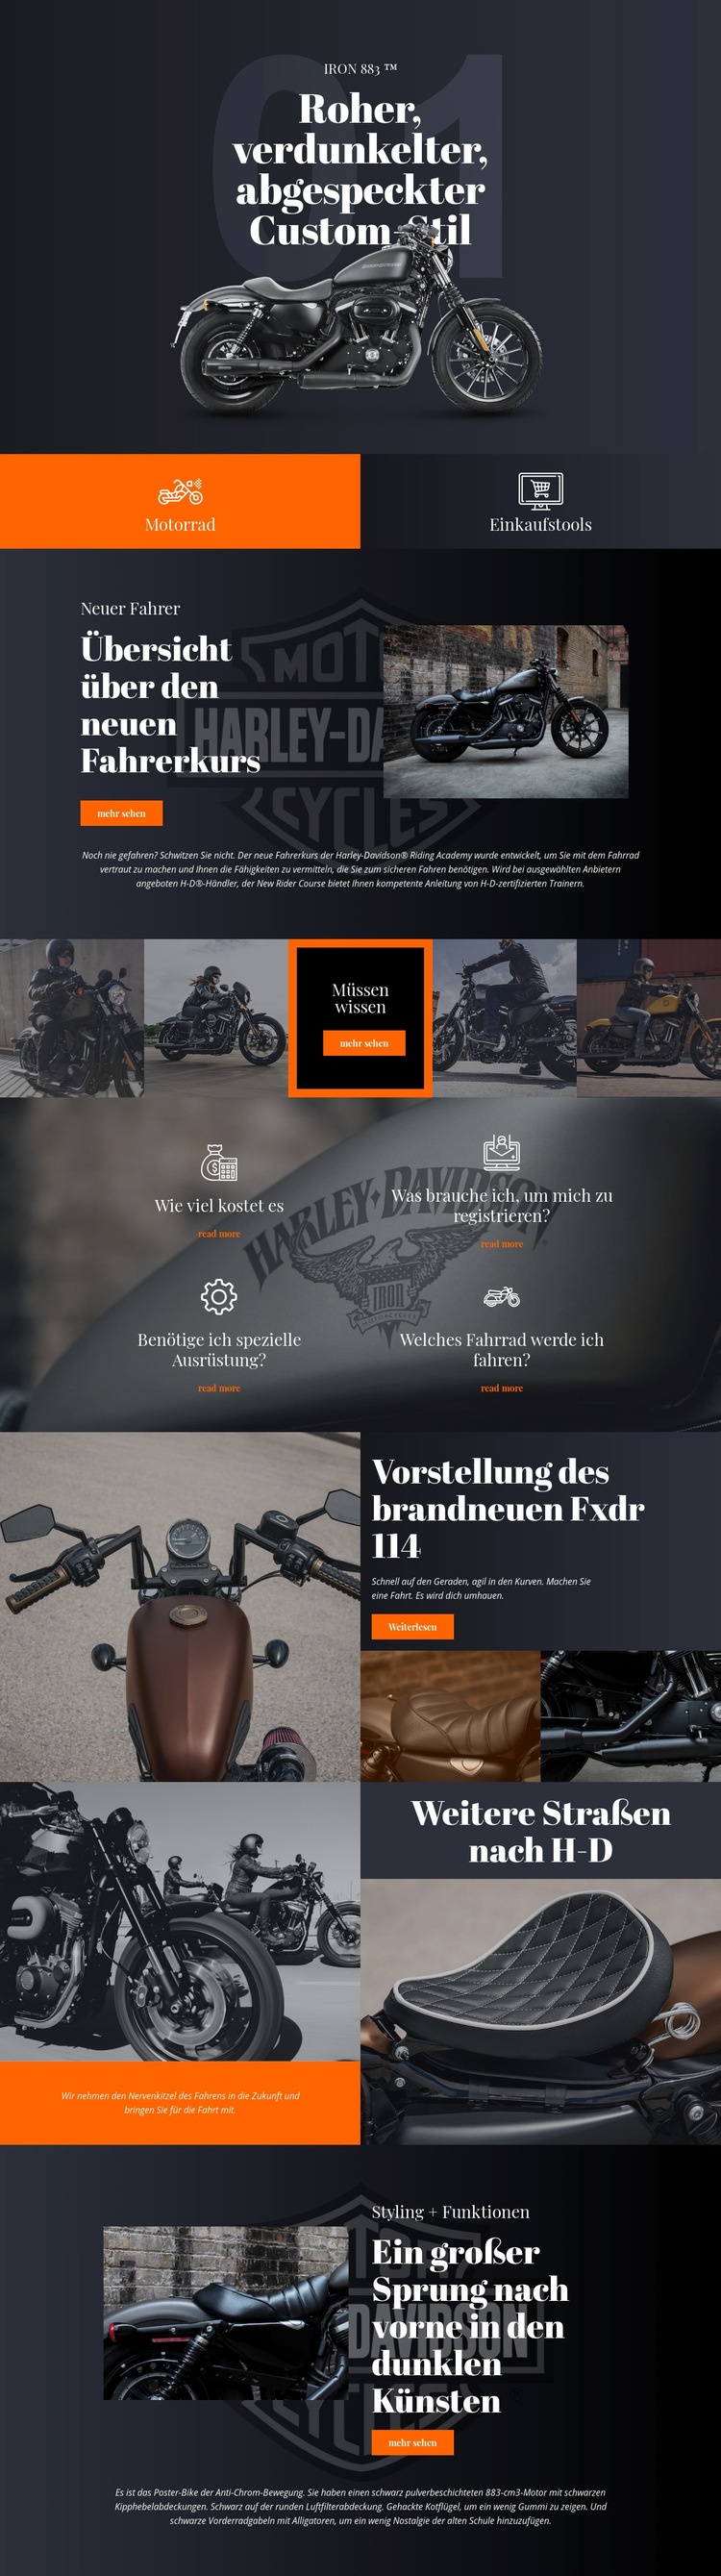 Harley Davidson Landing Page